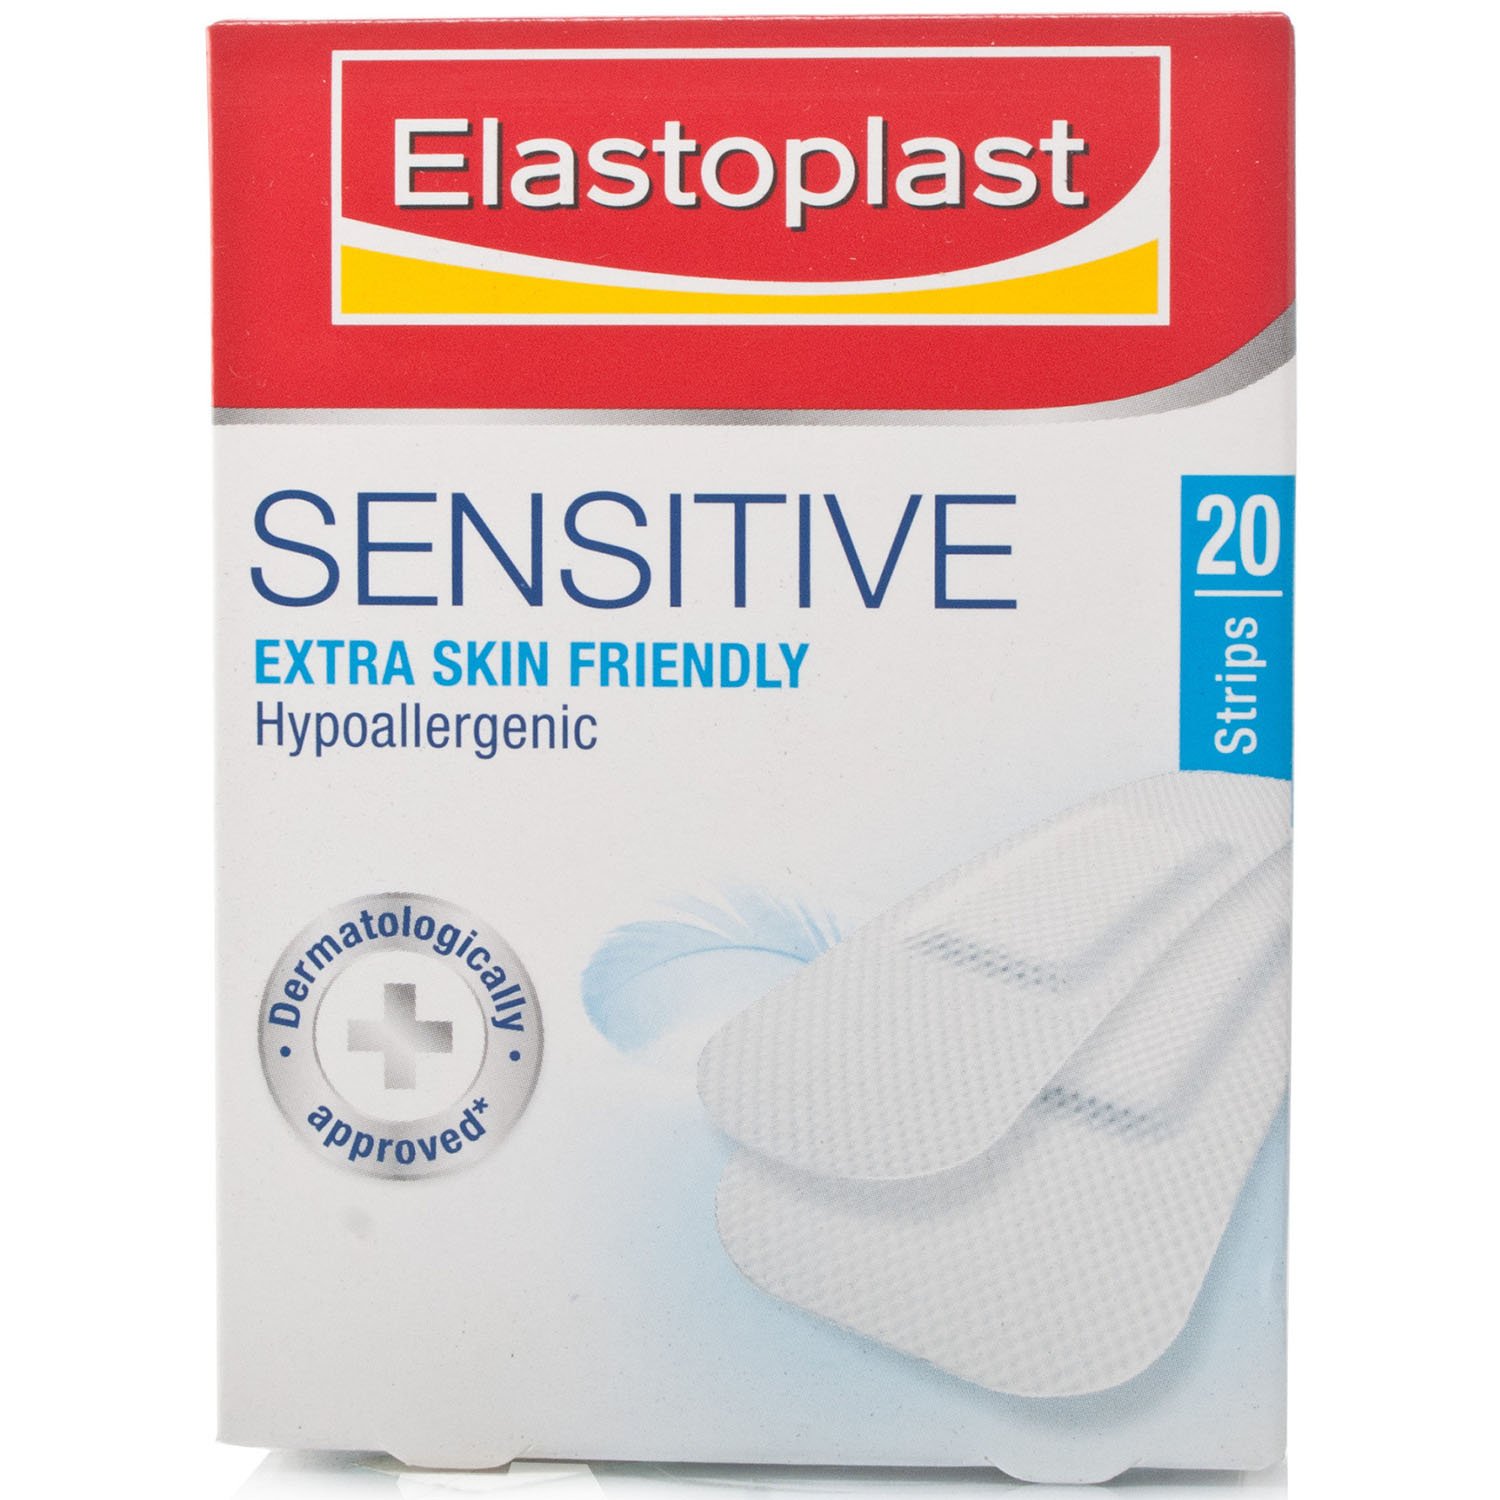 Elastoplast Sensitive Assorted - 20 Strips